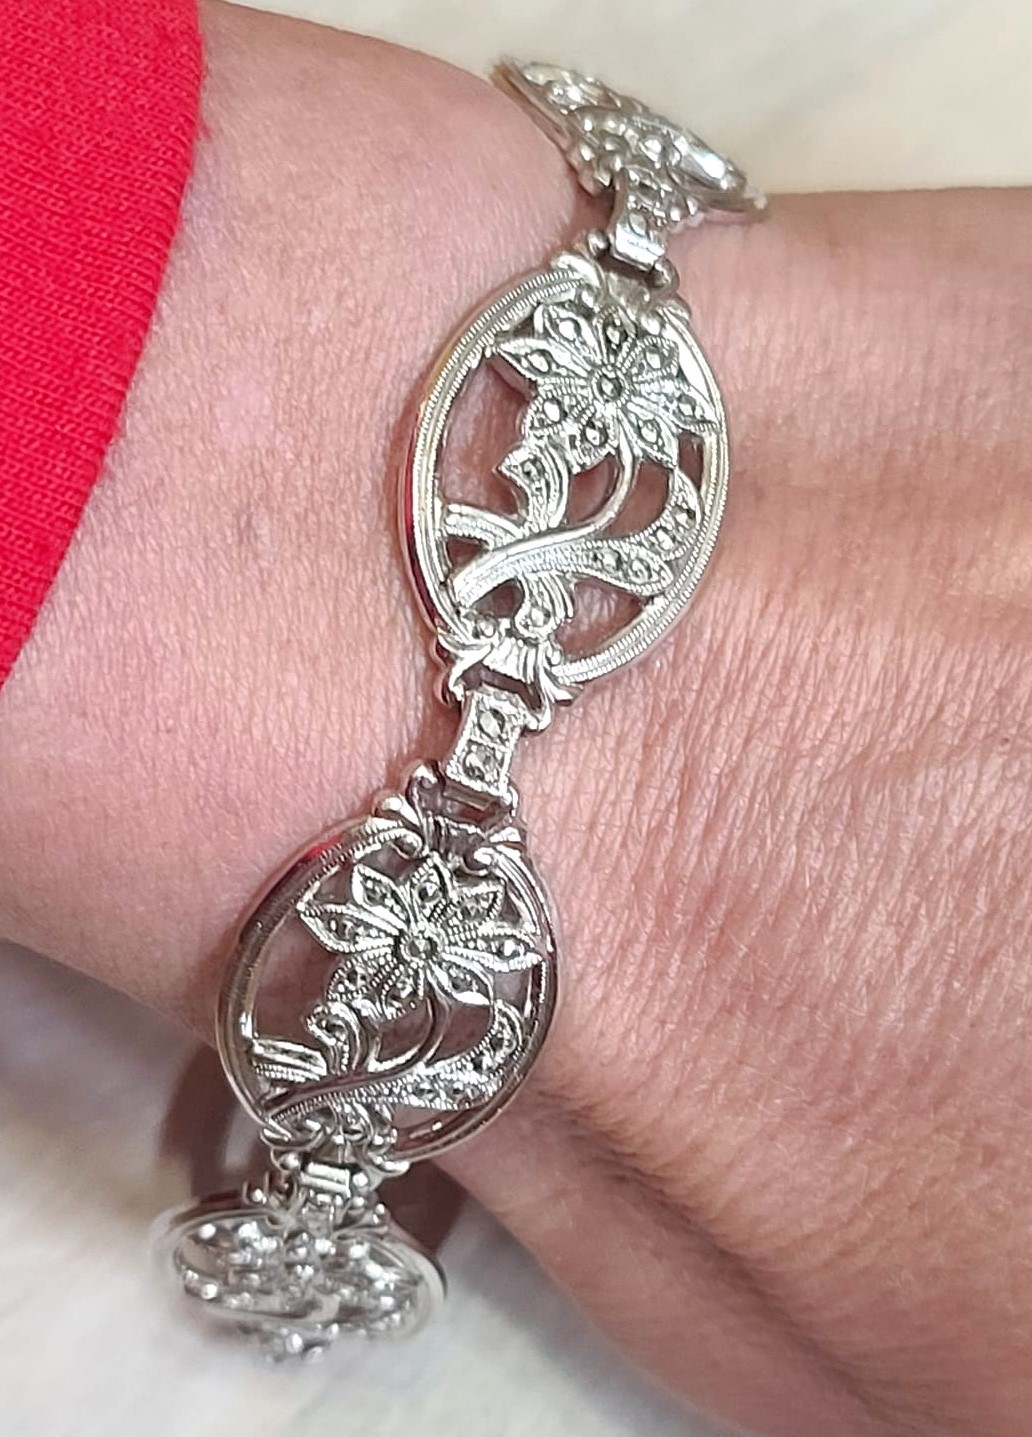 Marcasite bracelet, sterling silver, floral link bracelet, vintage, bracelet with saftety chain